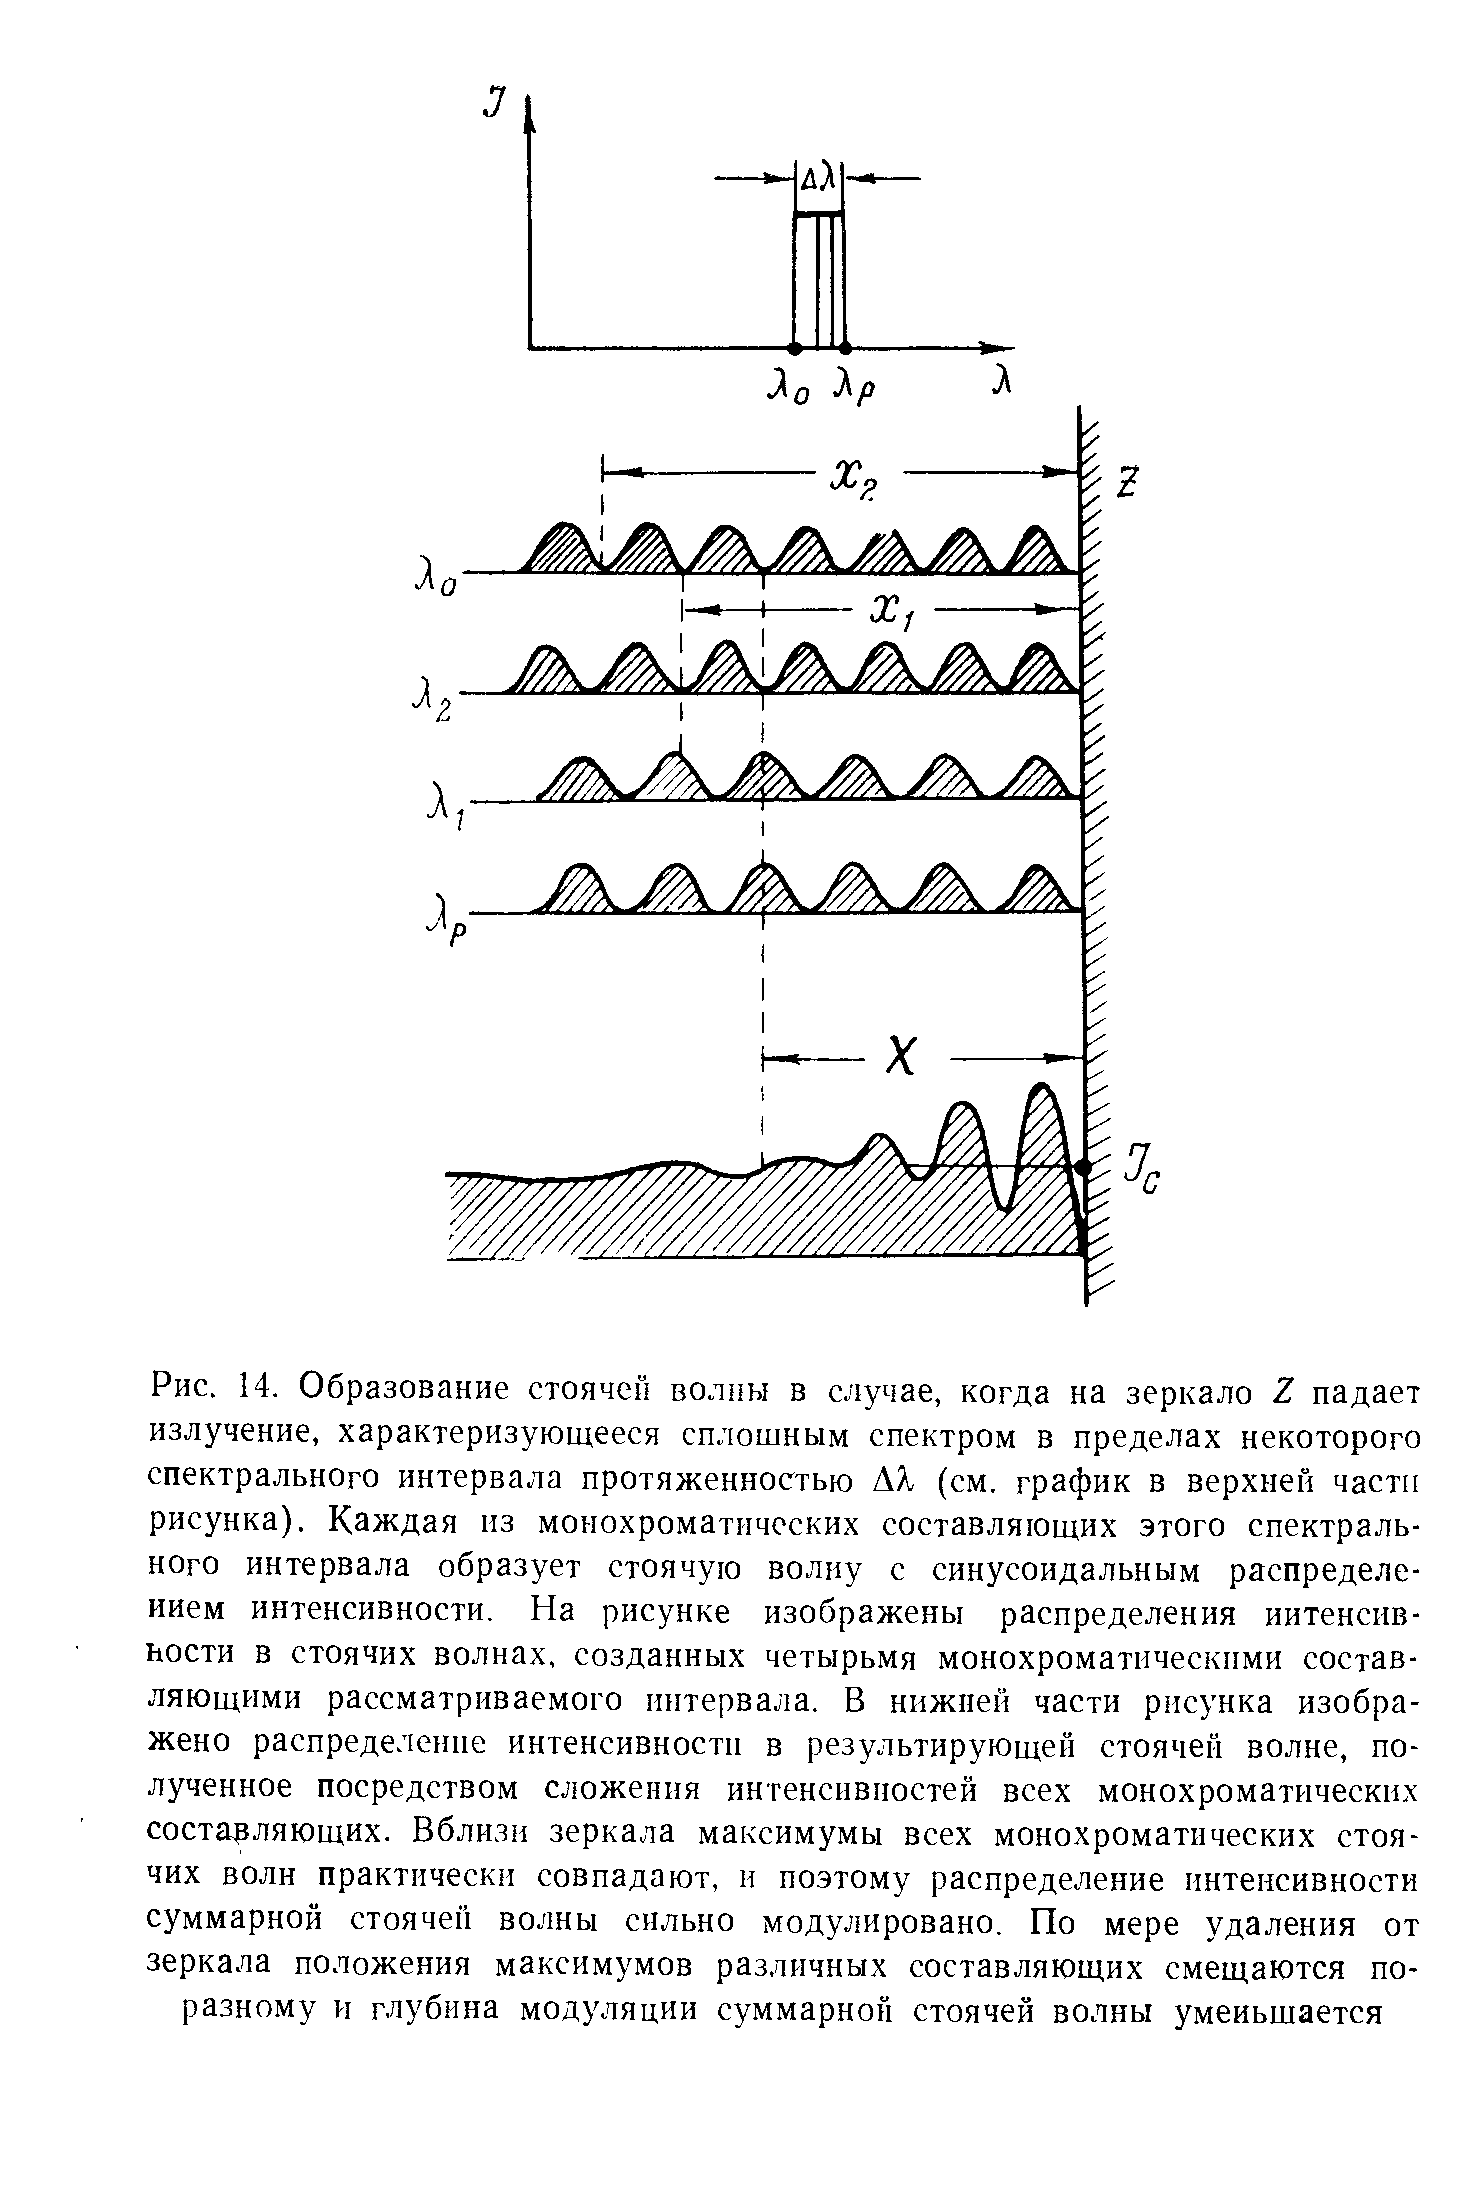 Рис. 14. Образование <a href="/info/10062">стоячей волны</a> в случае, когда на зеркало Z <a href="/info/126843">падает излучение</a>, характеризующееся <a href="/info/12730">сплошным спектром</a> в пределах некоторого спектрального интервала протяженностью ЬХ (см. график в верхней части рисунка). Каждая из монохроматических составляющих этого спектрального интервала образует <a href="/info/10062">стоячую волну</a> с синусоидальным <a href="/info/174637">распределением интенсивности</a>. На рисунке изображены распределения иитенсив-ьости в <a href="/info/10062">стоячих волнах</a>, созданных четырьмя монохроматическими составляющими рассматриваемого интервала. В нижпей части рисунка изображено <a href="/info/174637">распределение интенсивности</a> в результирующей <a href="/info/10062">стоячей волне</a>, полученное посредством сложения интенсивностей всех монохроматических состарляющих. Вбли.эи зеркала максимумы всех монохроматических <a href="/info/10062">стоячих волн</a> практически совпадают, н поэтому <a href="/info/174637">распределение интенсивности</a> суммарной <a href="/info/10062">стоячей волны</a> сильно модулировано. По мере удаления от зеркала положения максимумов различных составляющих смещаются по-разному и <a href="/info/172500">глубина модуляции</a> суммарной <a href="/info/10062">стоячей волны</a> уменьшается
